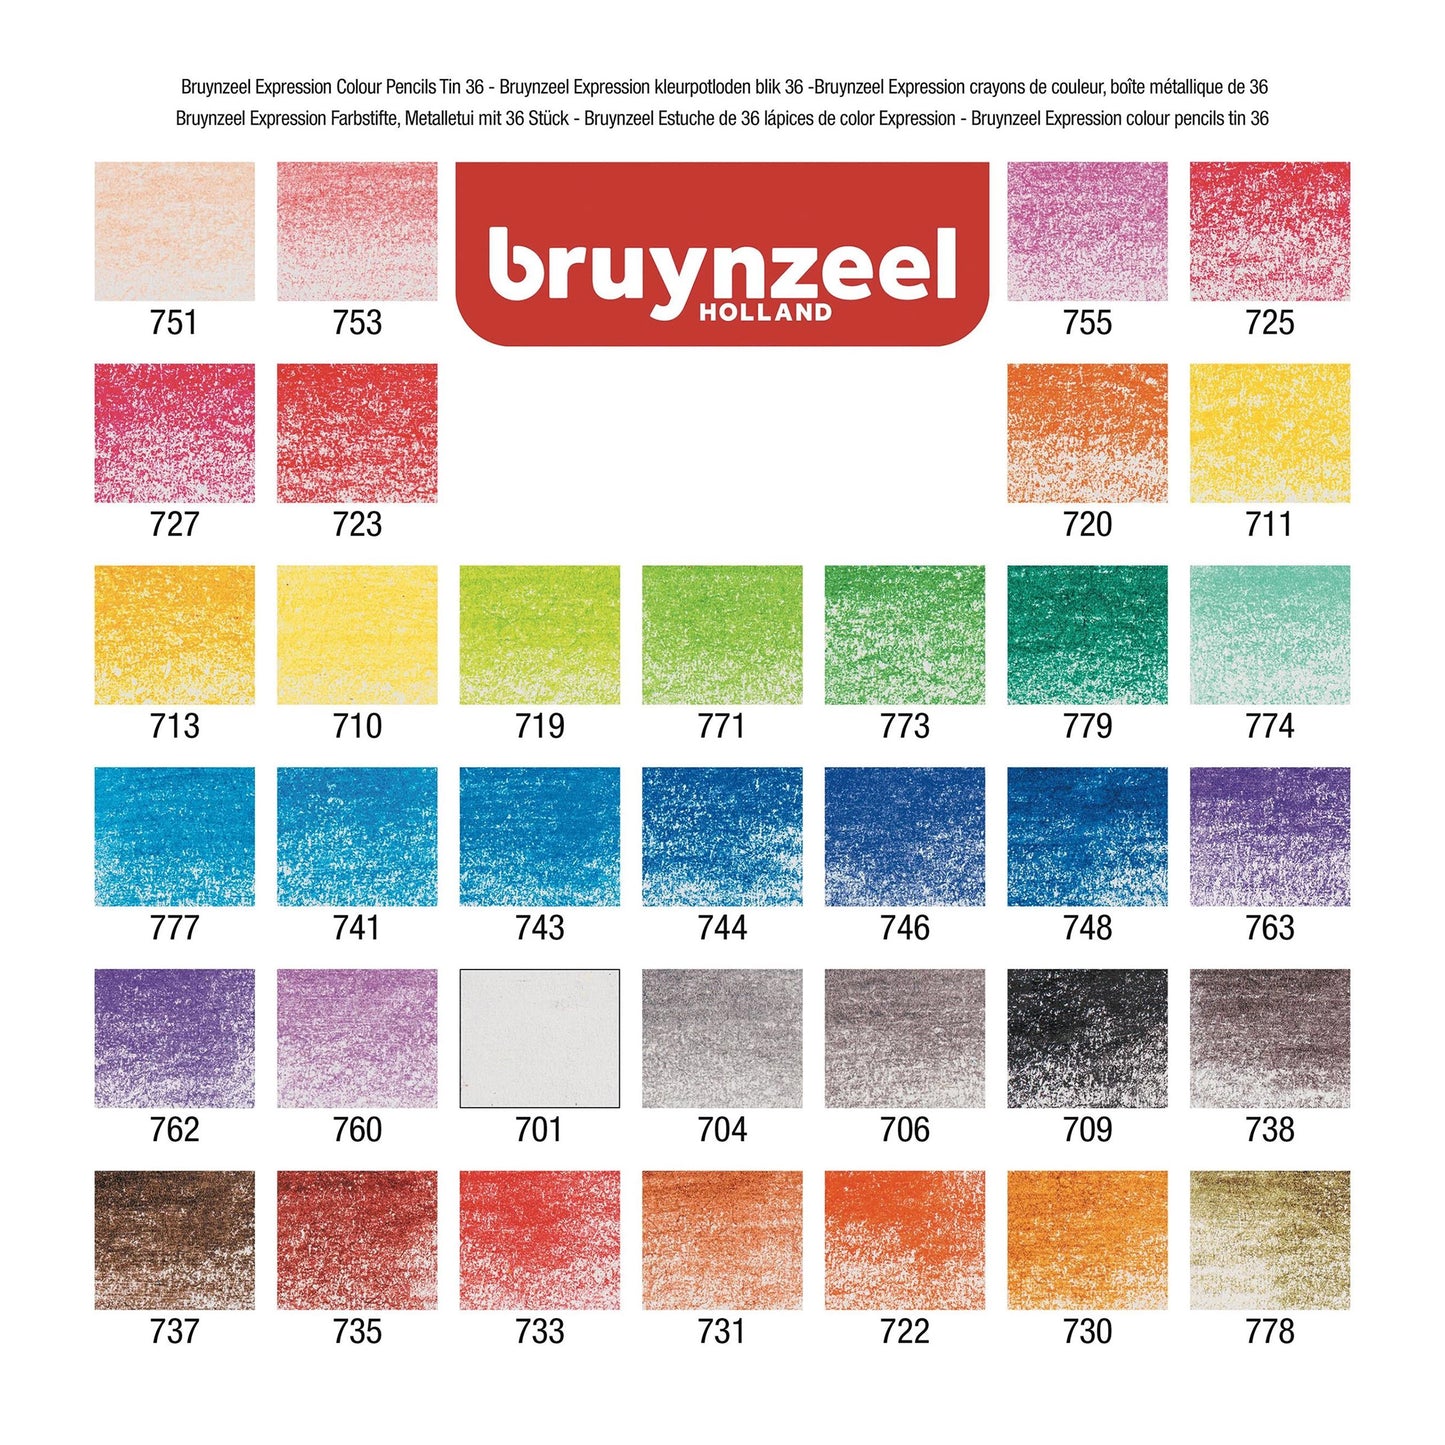 Bruynzeel Expression Fargeblyanter, 36-sett